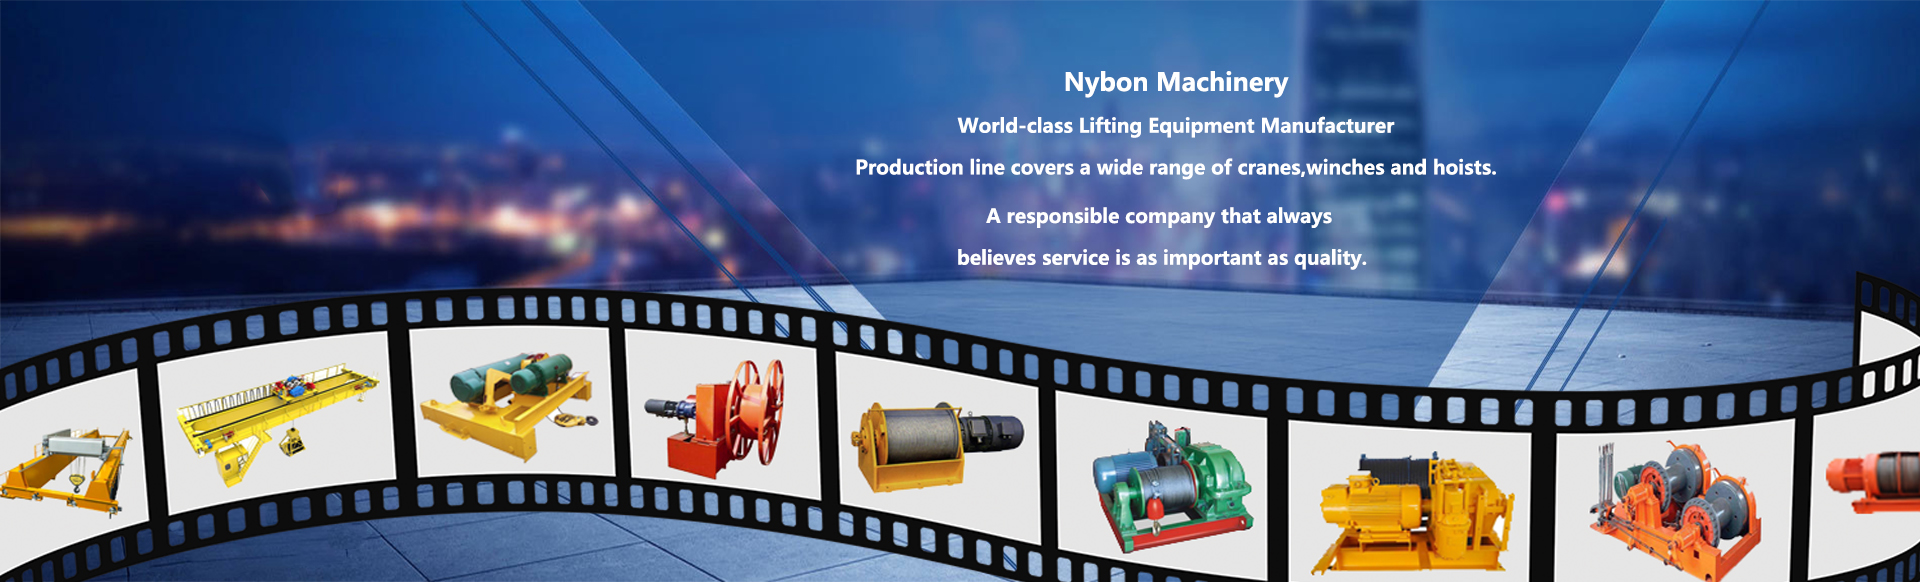 Nybon Machinery